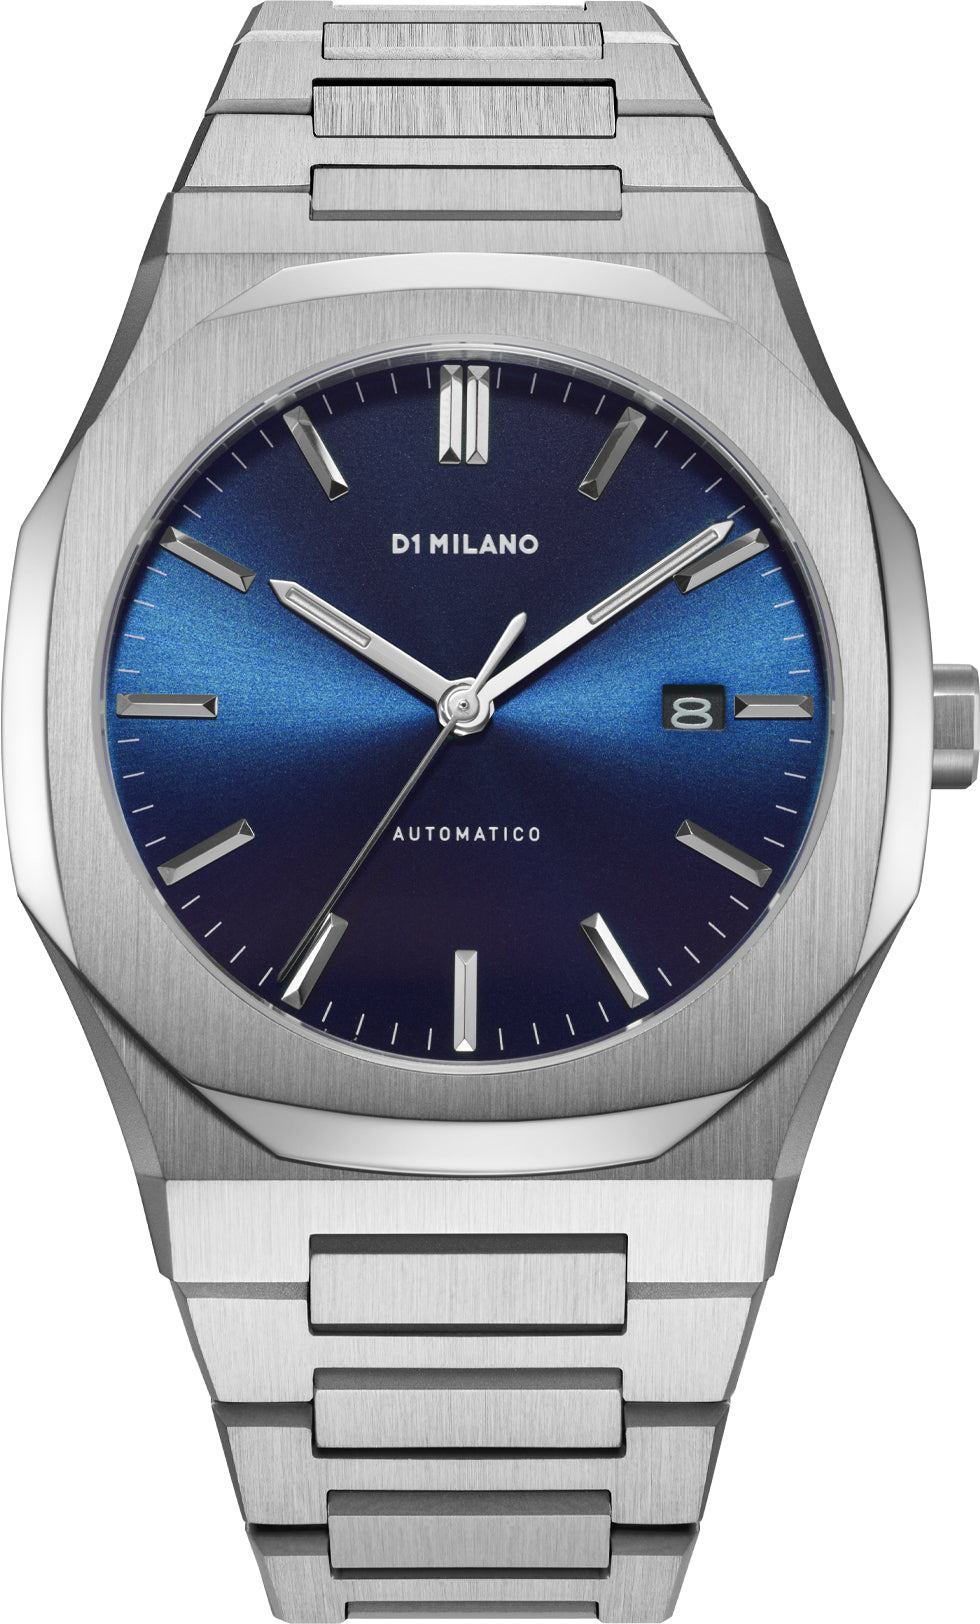 Photos - Wrist Watch Milano D1  Watch Automatic Bracelet Blue - Blue DLM-088 